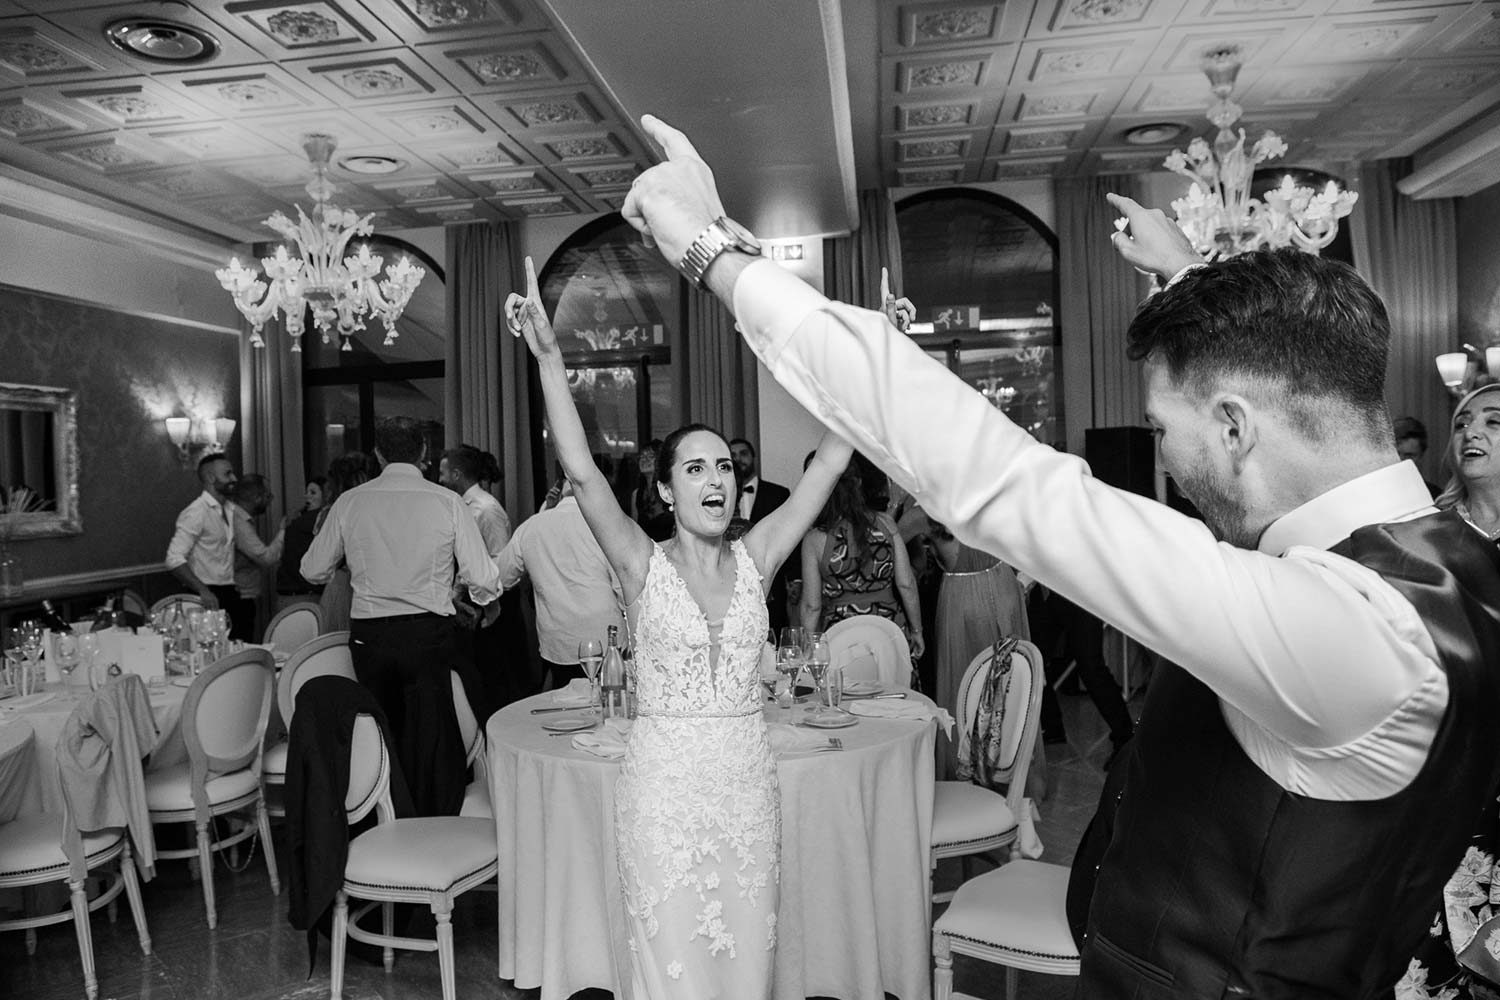 Giorgia and Francesco dance during the reception